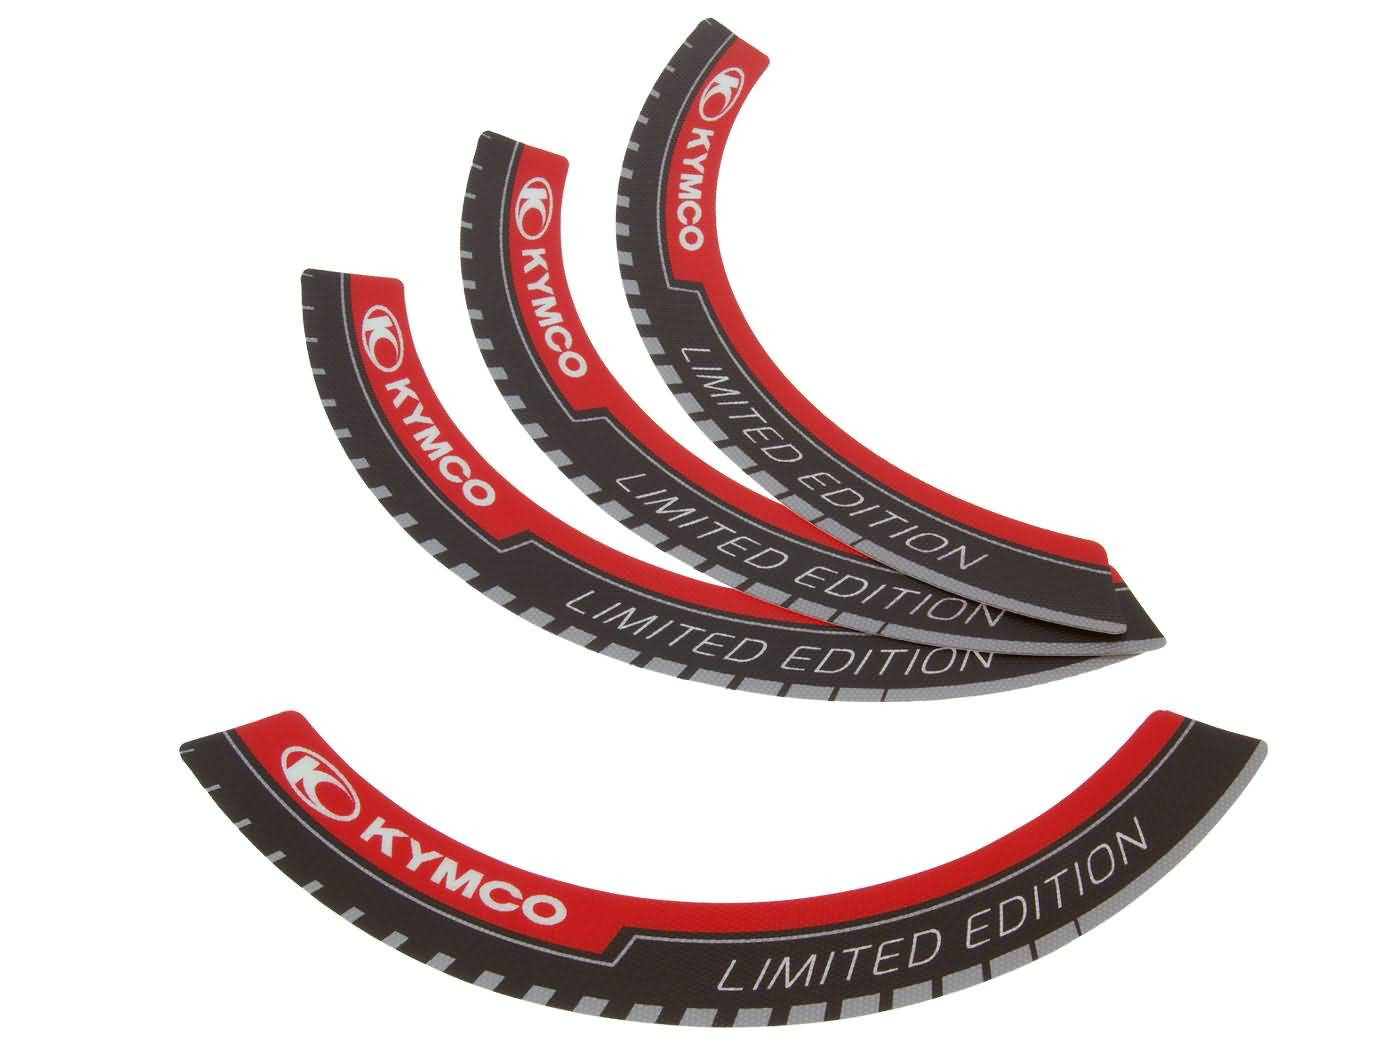 Felni szalag - Kymco Limited Edition -, 12 hüvelykes kerék